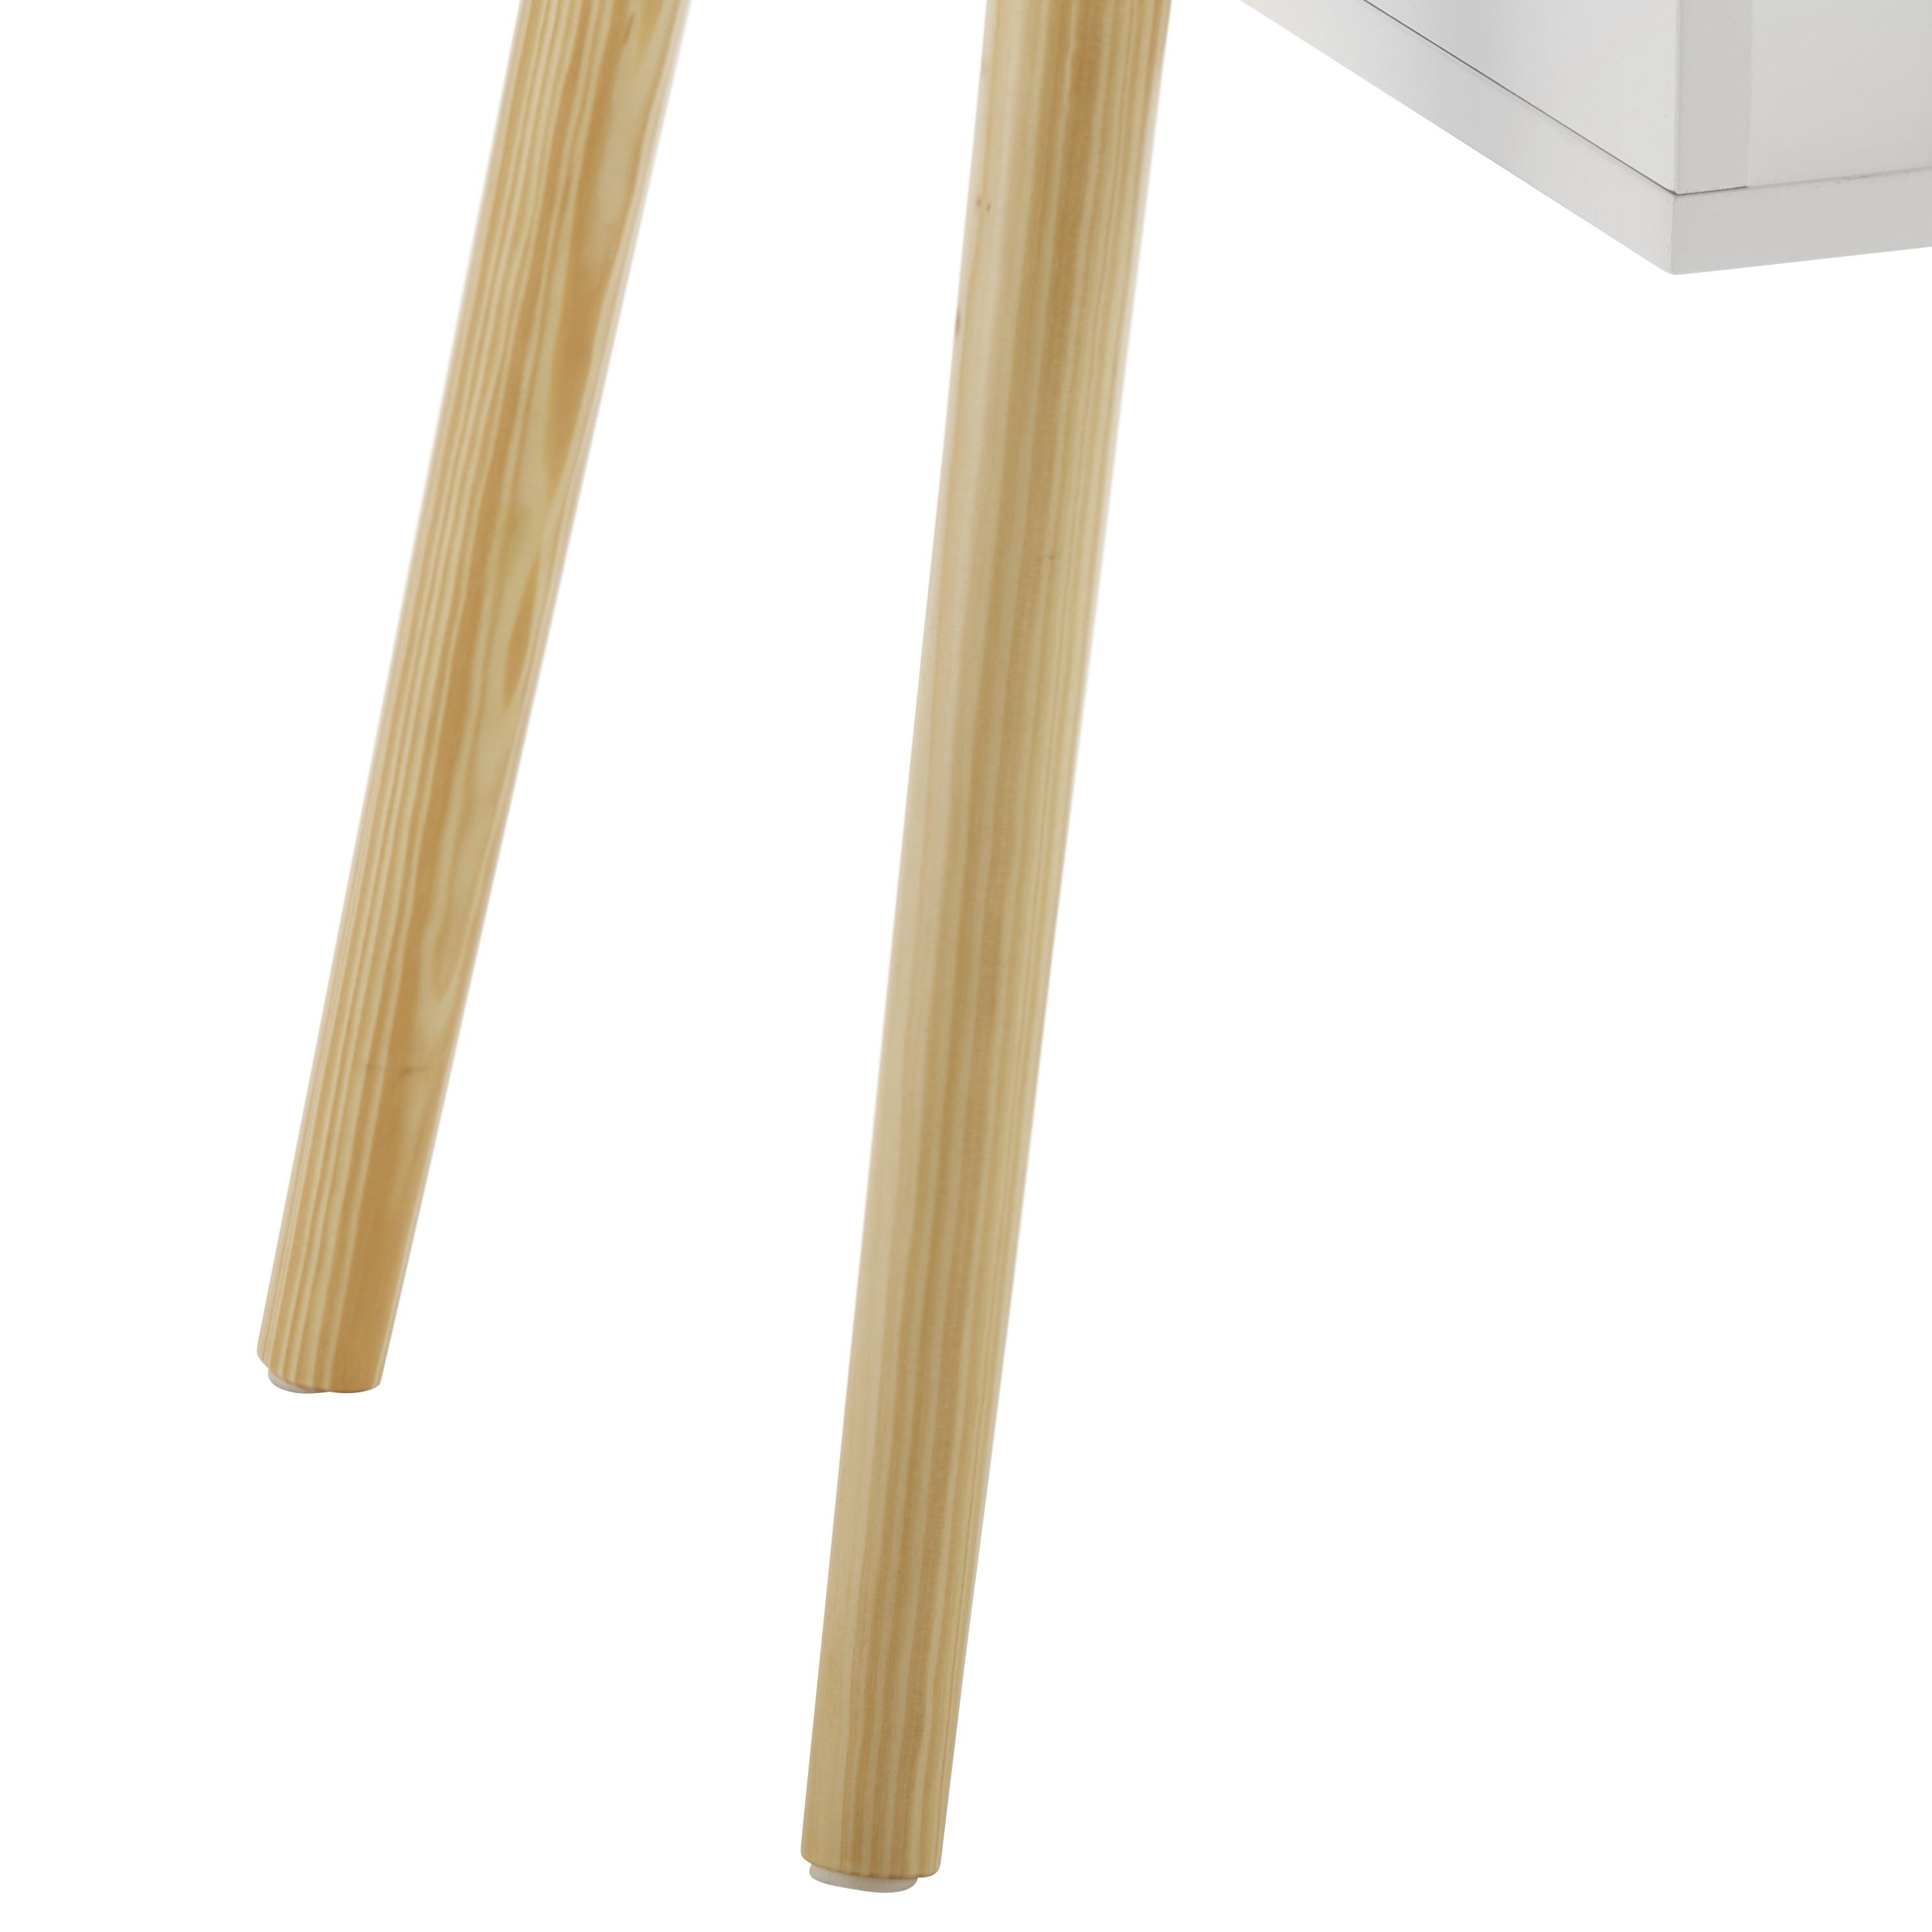 Couchtisch Holz "Silvio", ca. 100x50 cm, Pinie, teilmassiv - Weiß/Pinienfarben, MODERN, Holz/Holzwerkstoff (100/50/42,5cm) - Bessagi Home